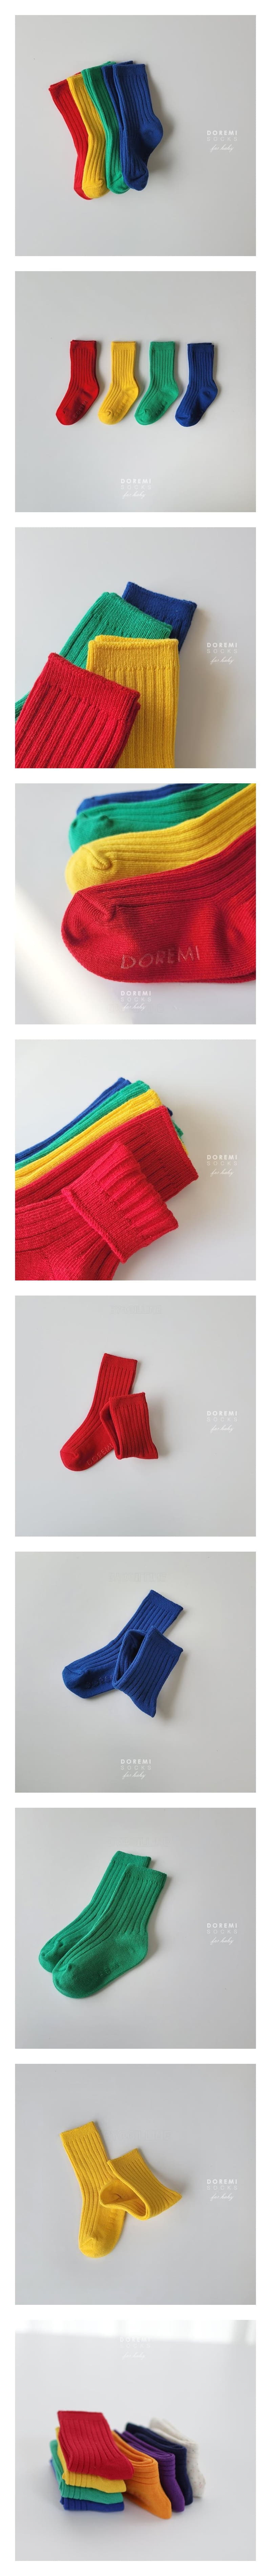 Doremi Socks - Korean Children Fashion - #littlefashionista - Traffic Light Socks